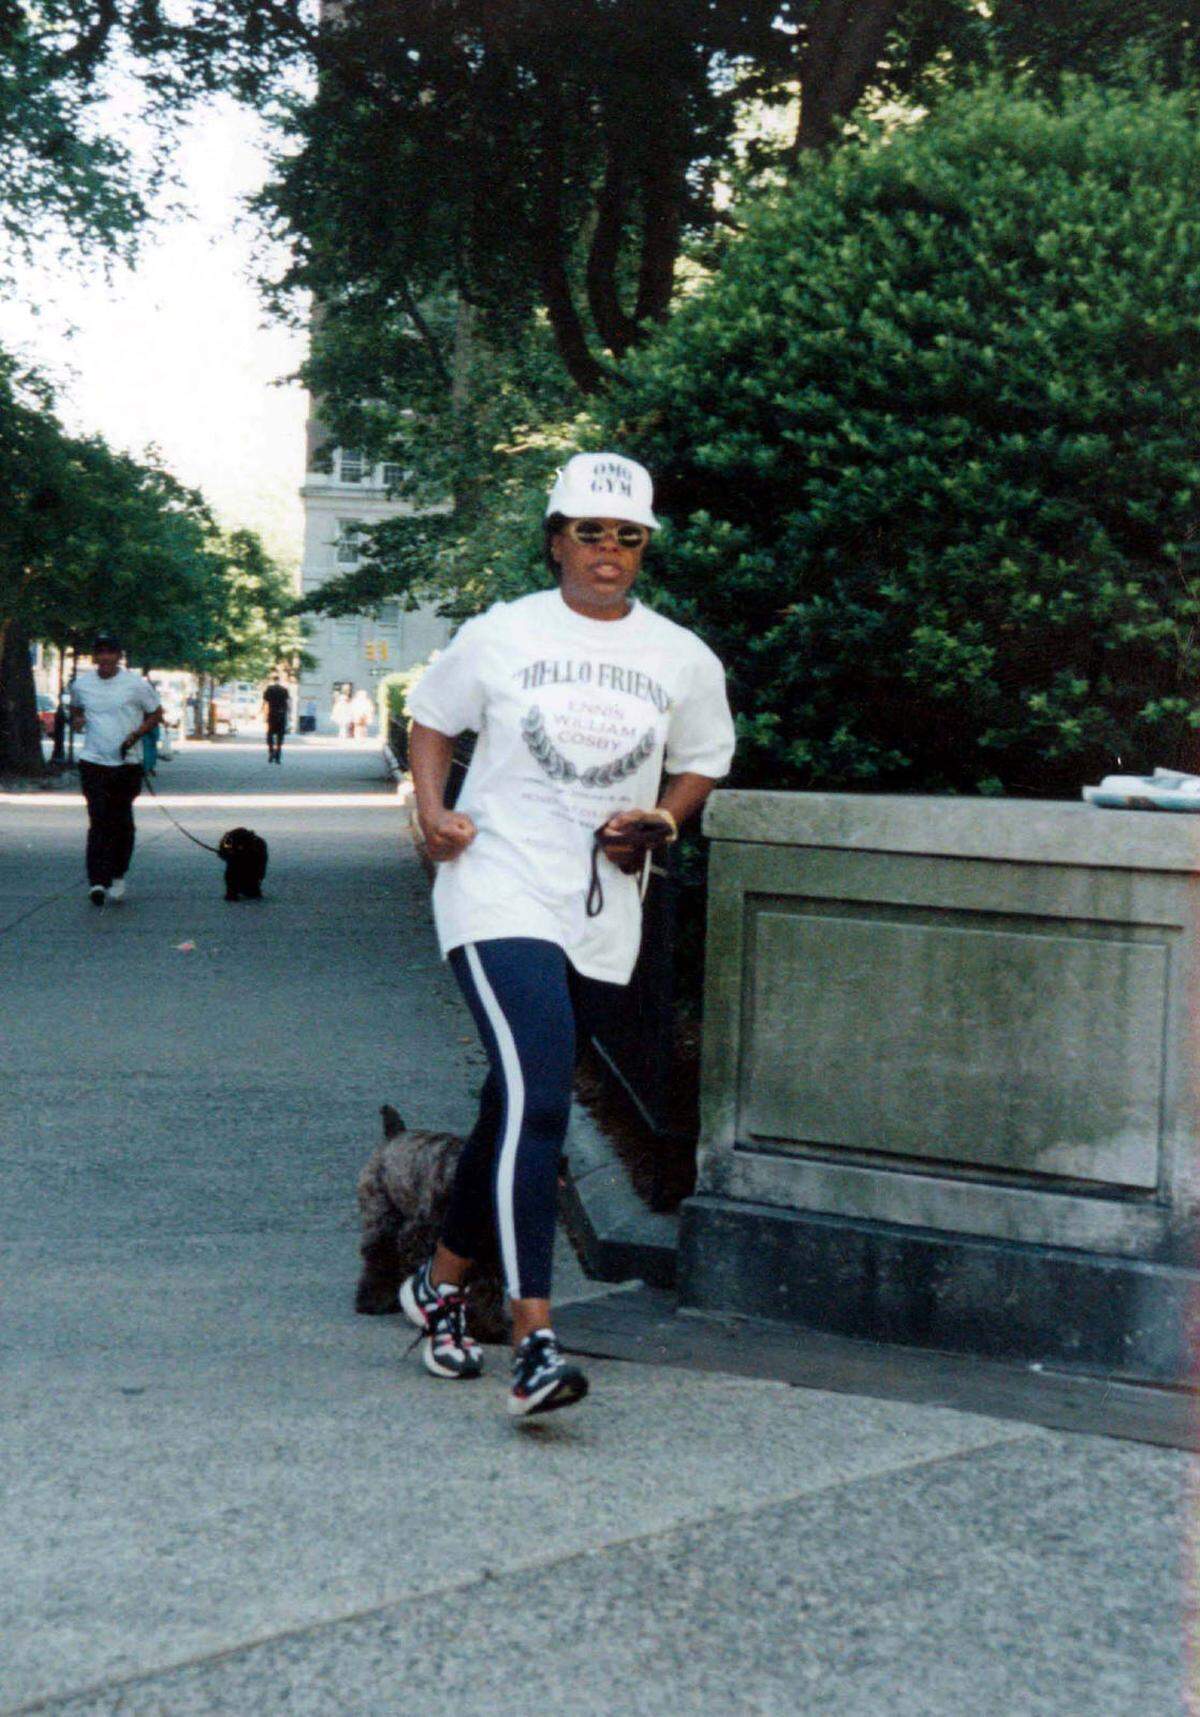 Im Jahr 1994 setzte sich Oprah Winfrey ein Ziel: Sie wollte vor ihrem 40. Geburtstag bei einem Marathon bis ins Ziel laufen. Im selben Jahr lief sie den Marine Corps Marathon in 4:29:20.